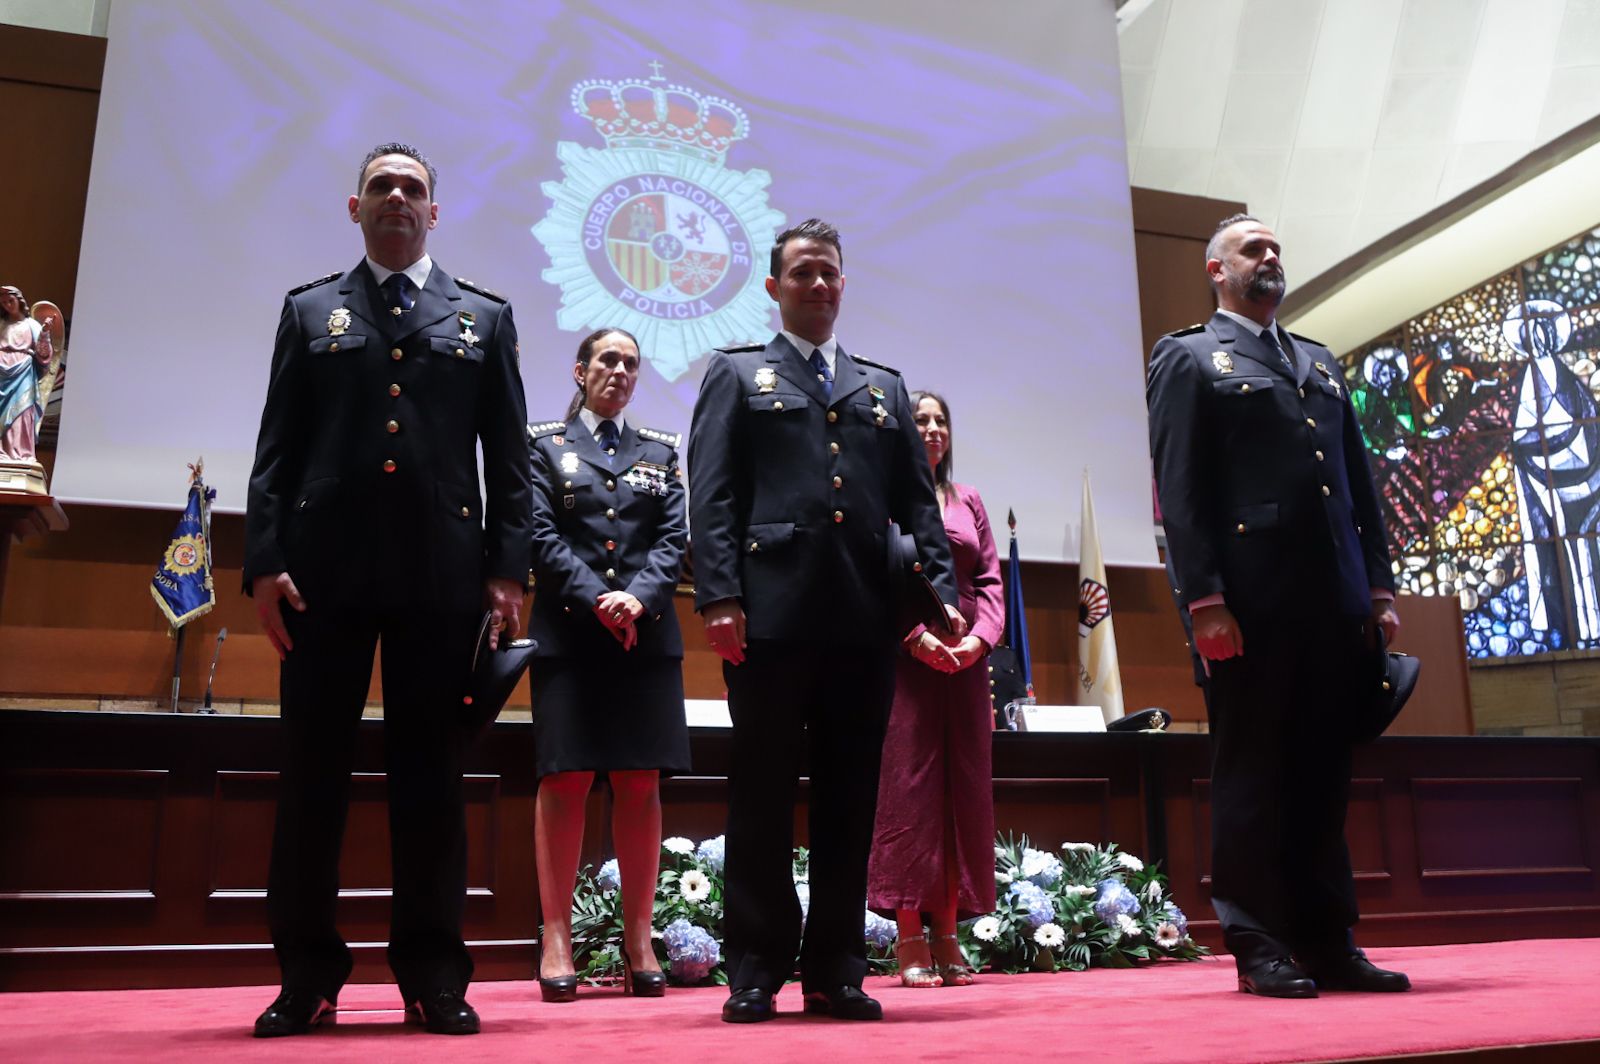 Orgullo y unión en el gran día de la Policía Nacional